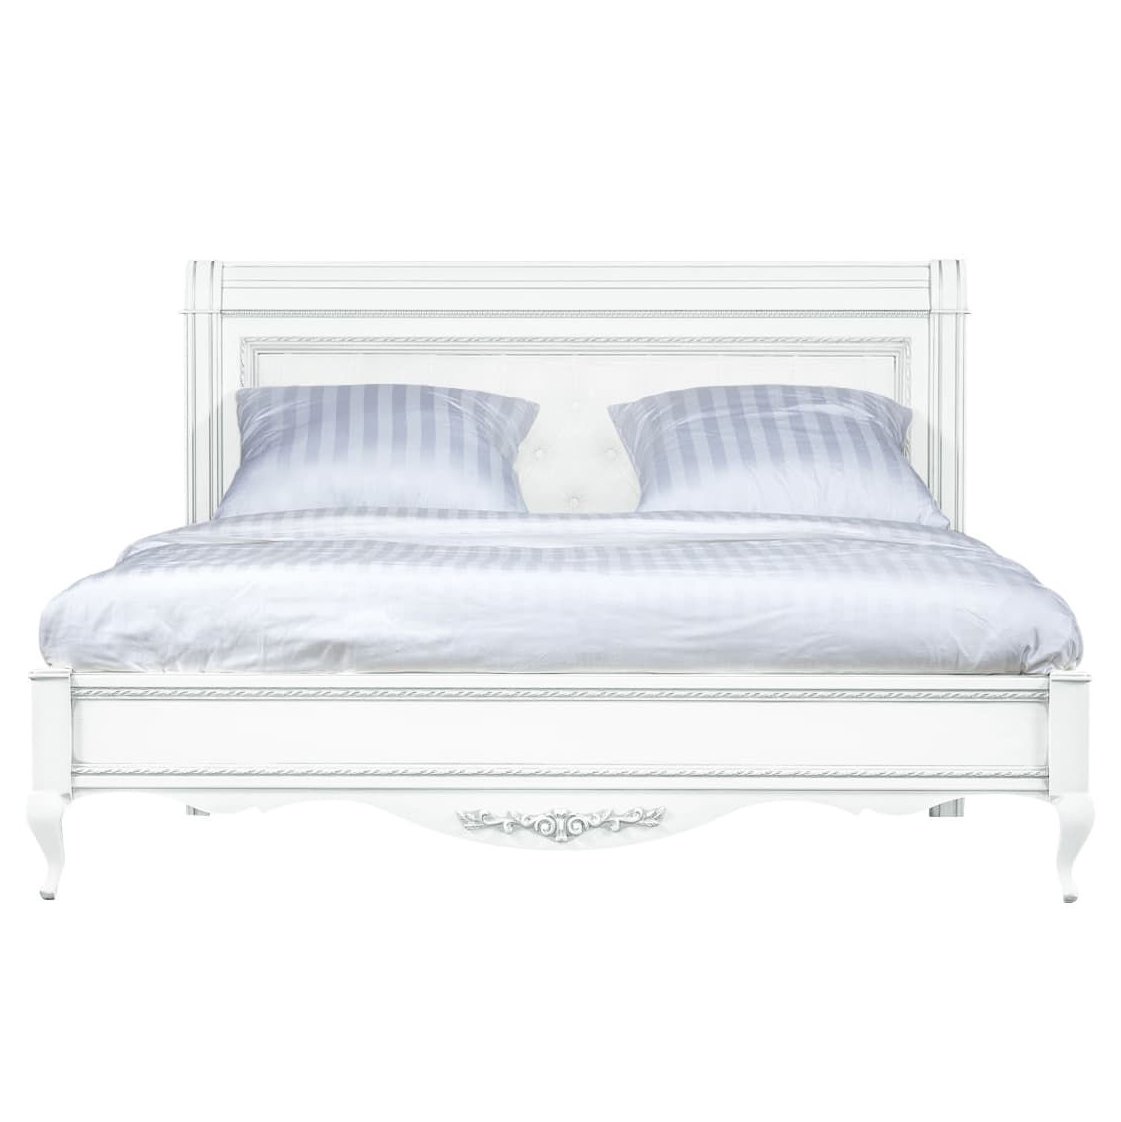 Кровать Timber Неаполь, двуспальная с мягким изголовьем 160x200 см цвет: белый с серебром (T-520)T-520